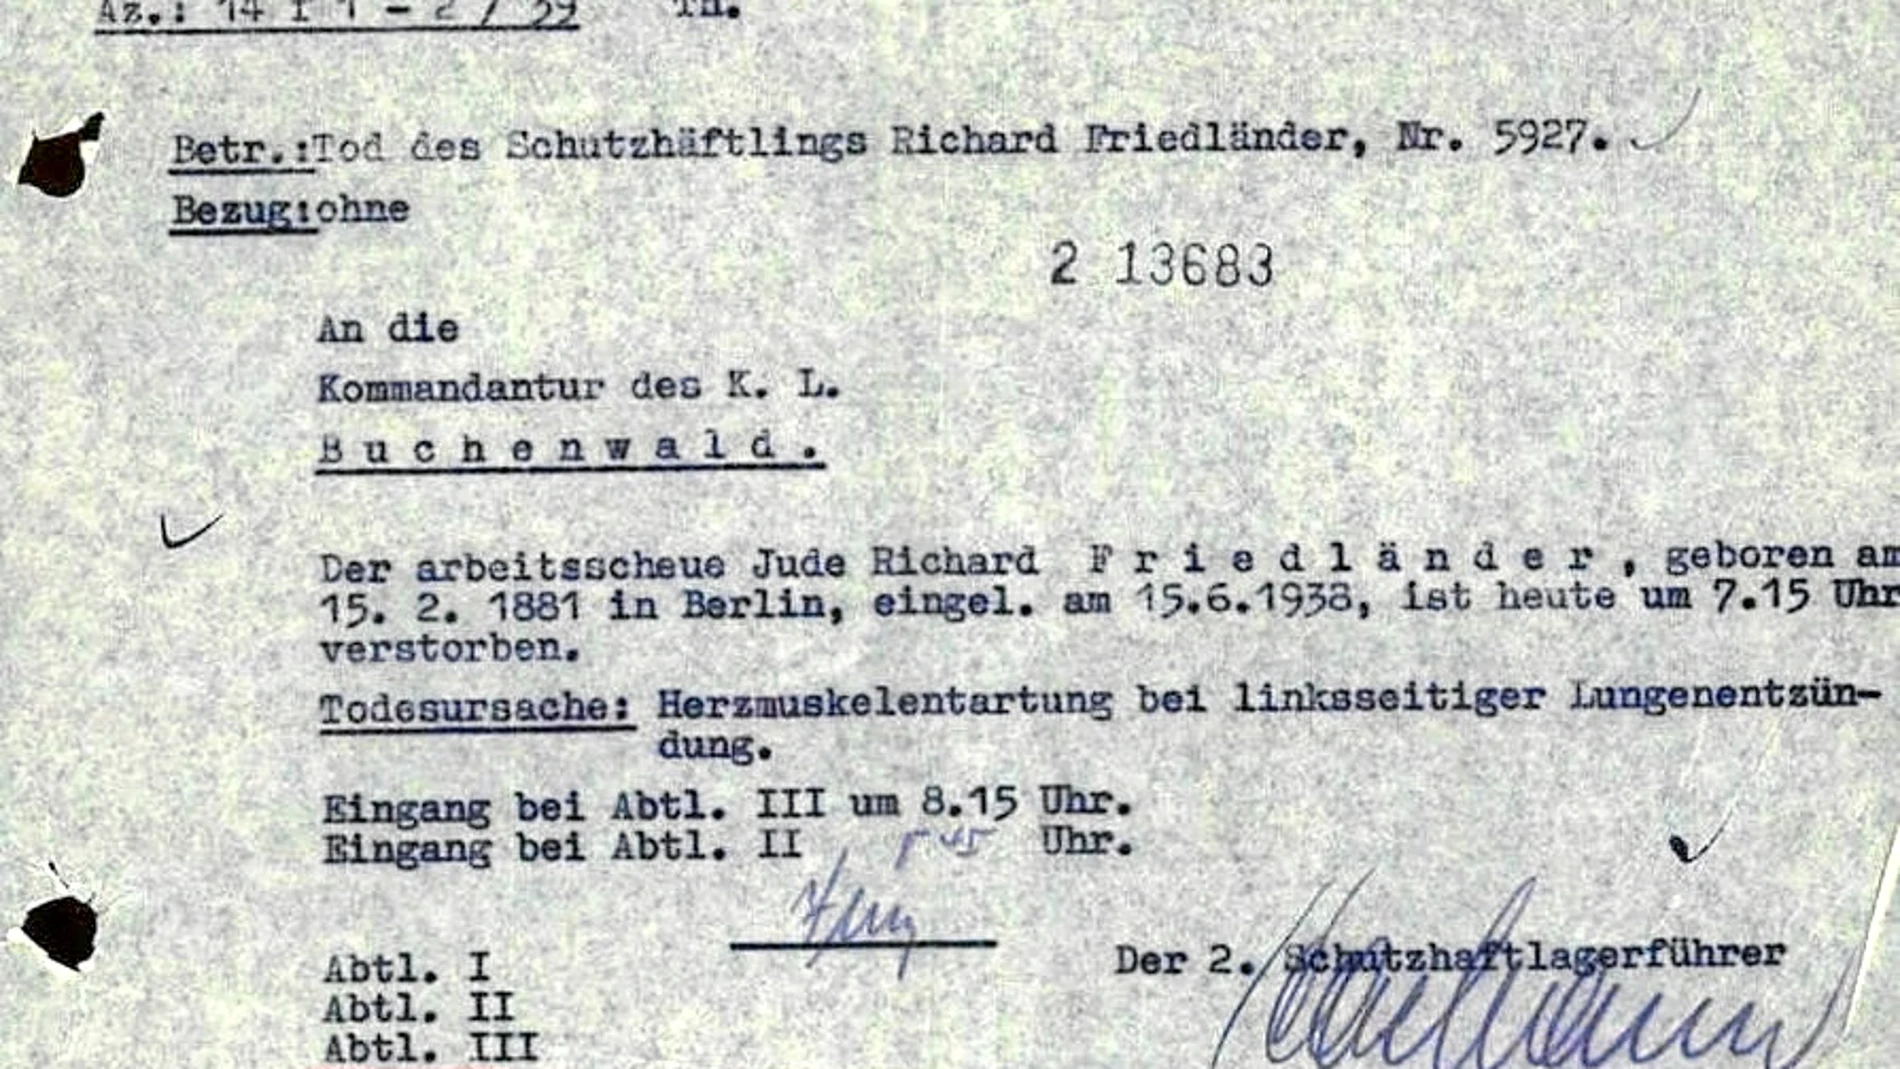 Muerte documentada. Este certificado demuestra que Richard Friedlander, del que consta su origen judío, falleció en 1939 en Buchenwald